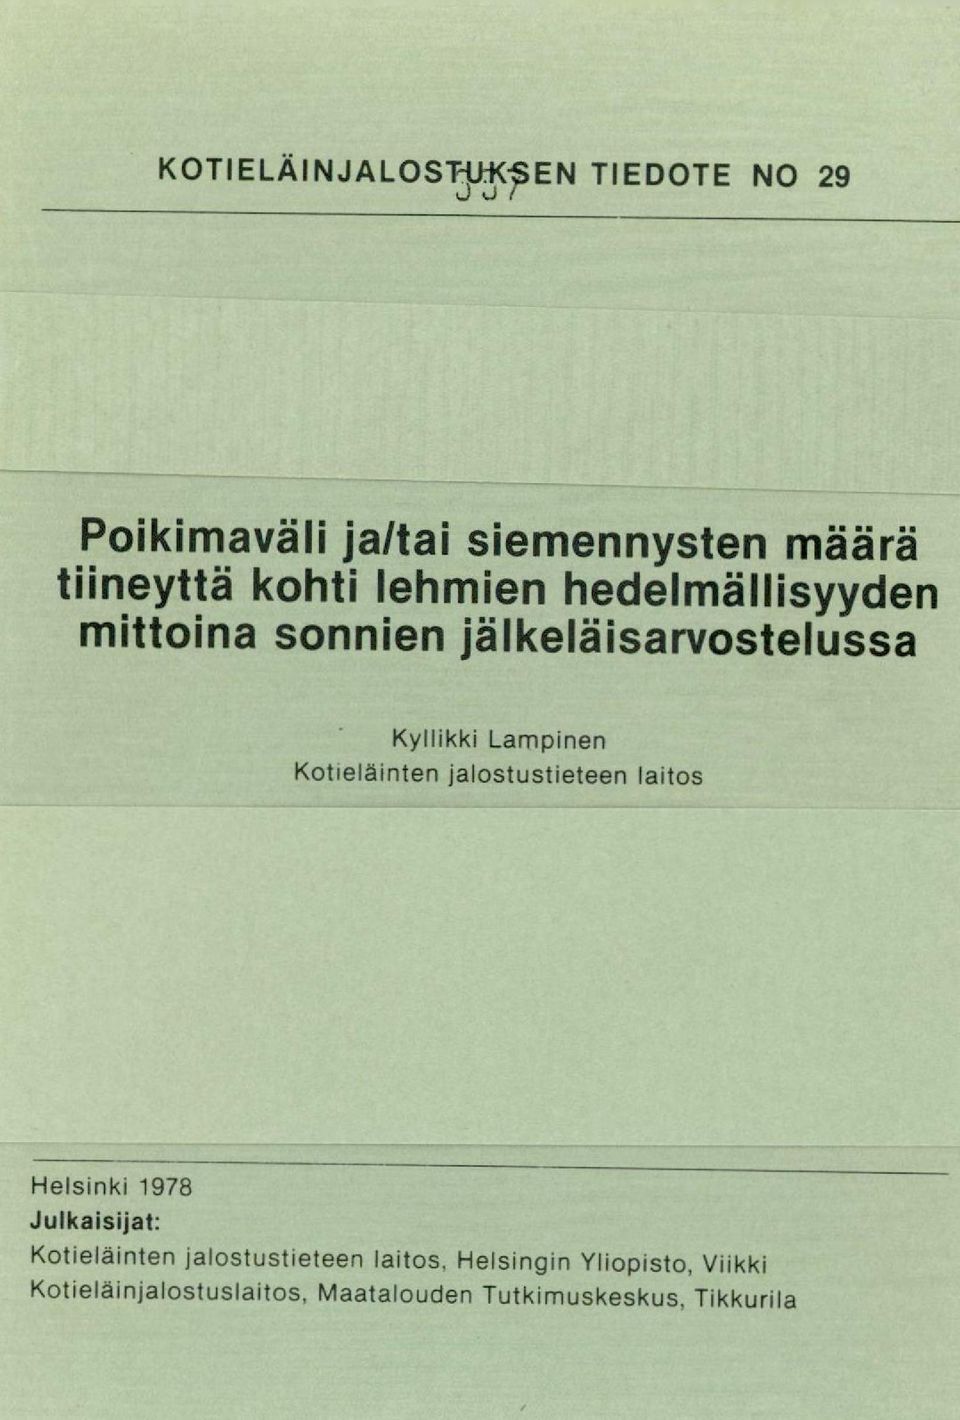 Kotieläinten jalostustieteen laitos Helsinki 1978 Julkaisijat: Kotieläinten jalostustieteen